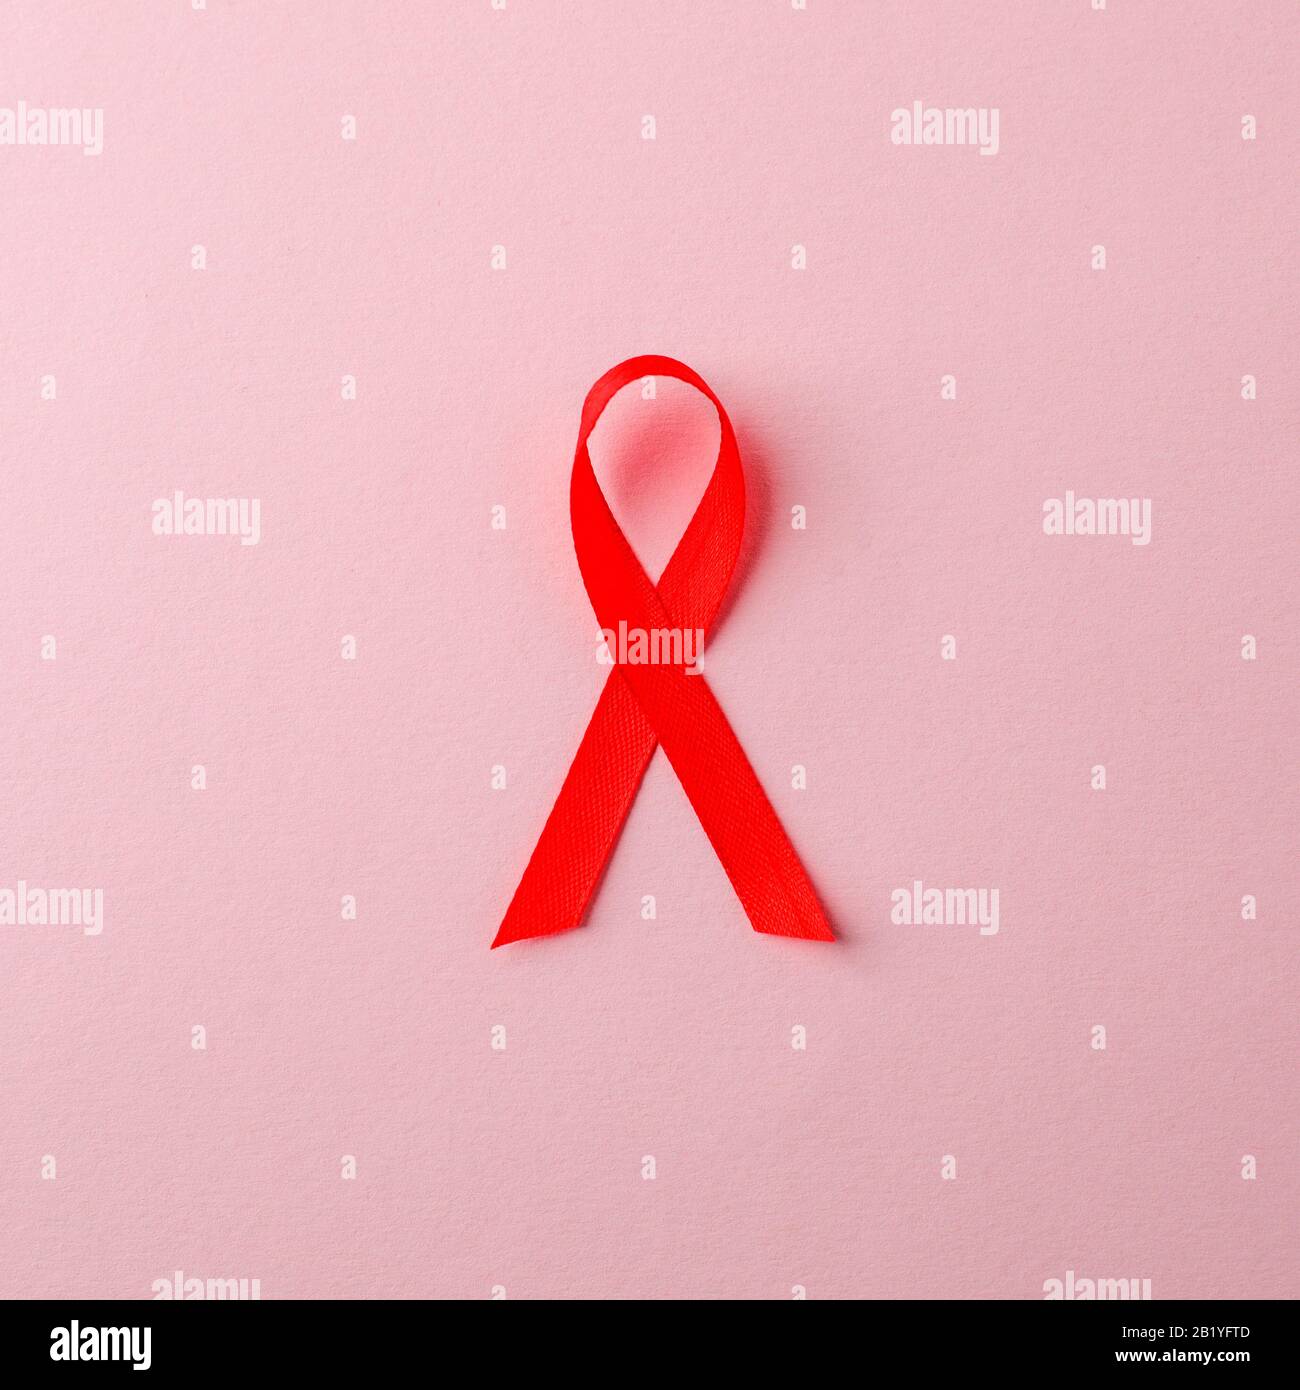 AIDS awareness nastro rosso su sfondo rosa. World AIDS Day Concept, simbolo della malattia del virus dell'immunodeficienza umana Foto Stock